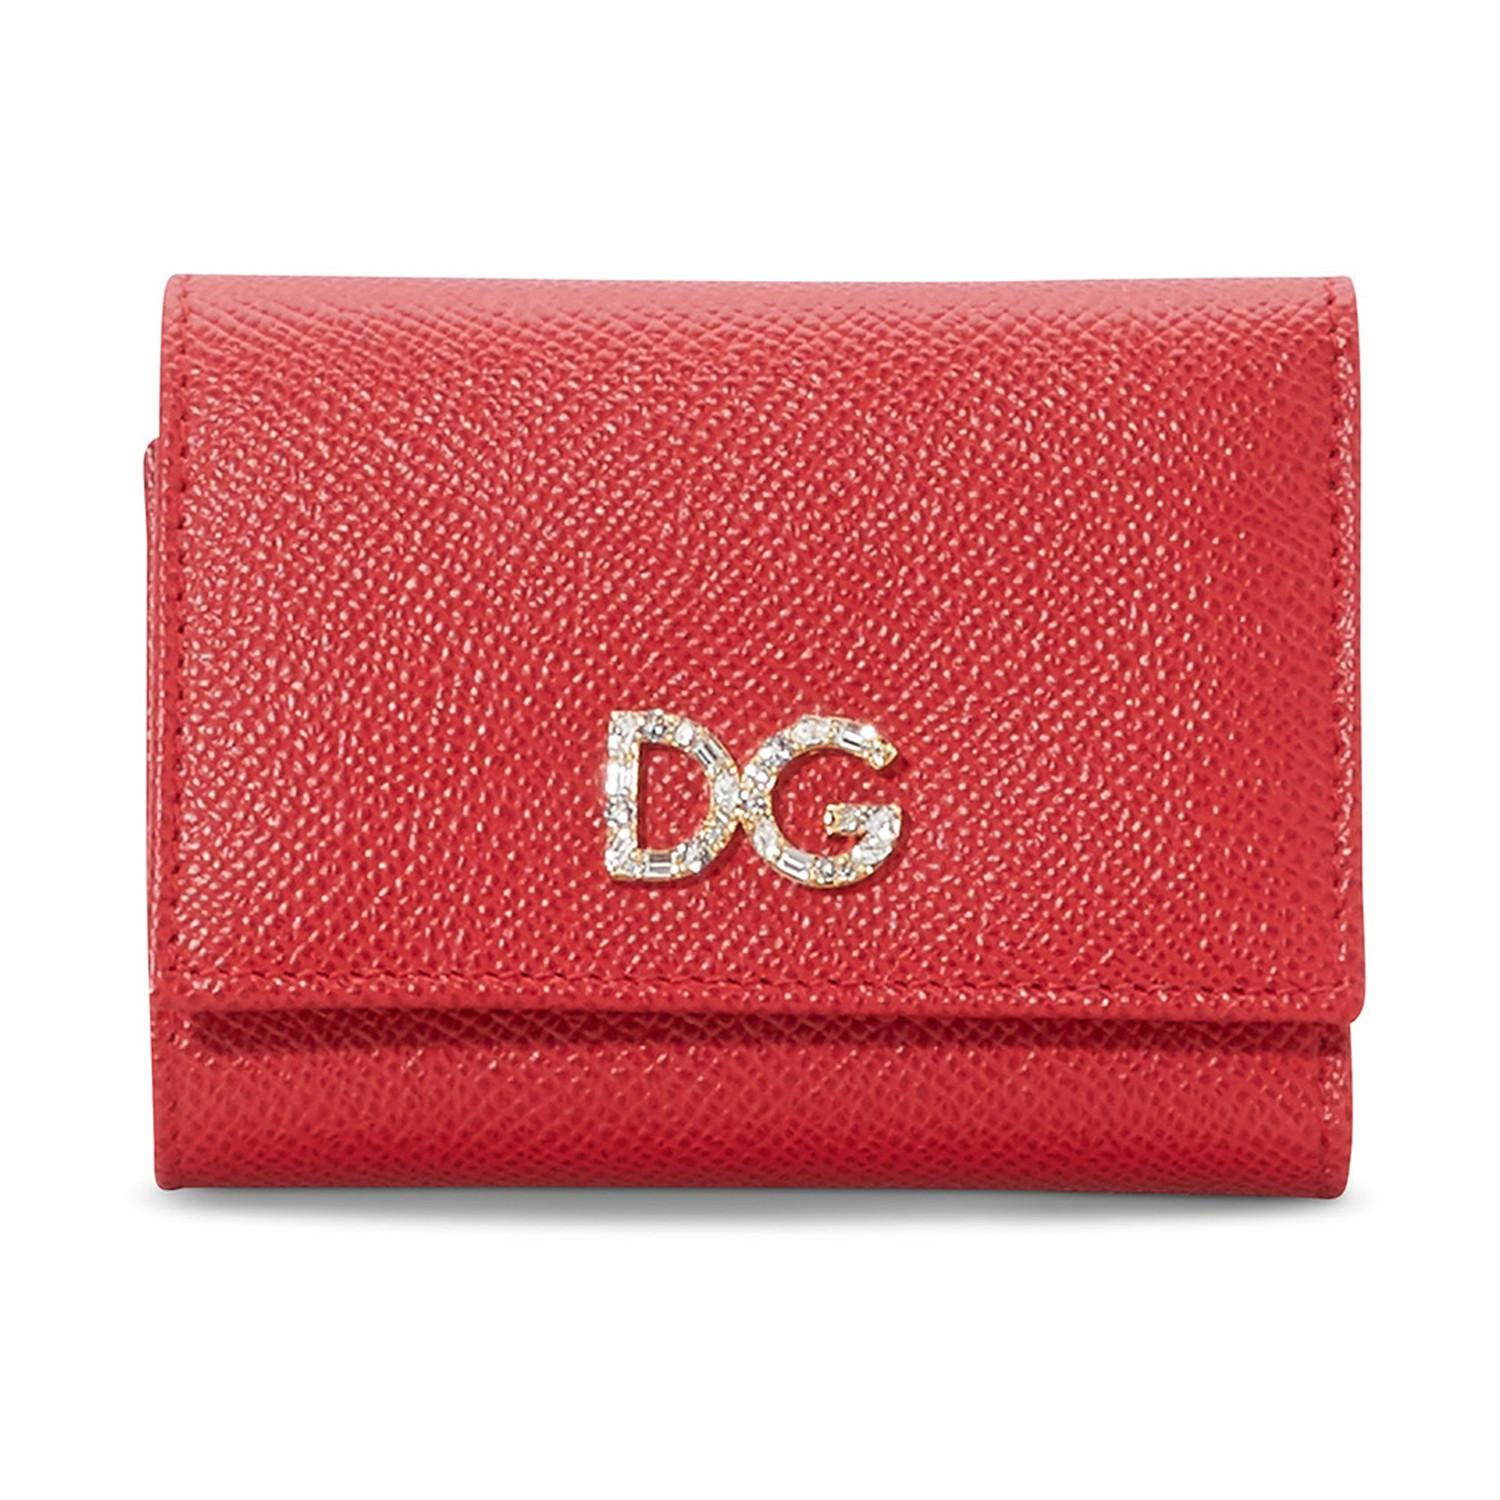 Dolce & Gabbana Dg Wallet in Red - Lyst